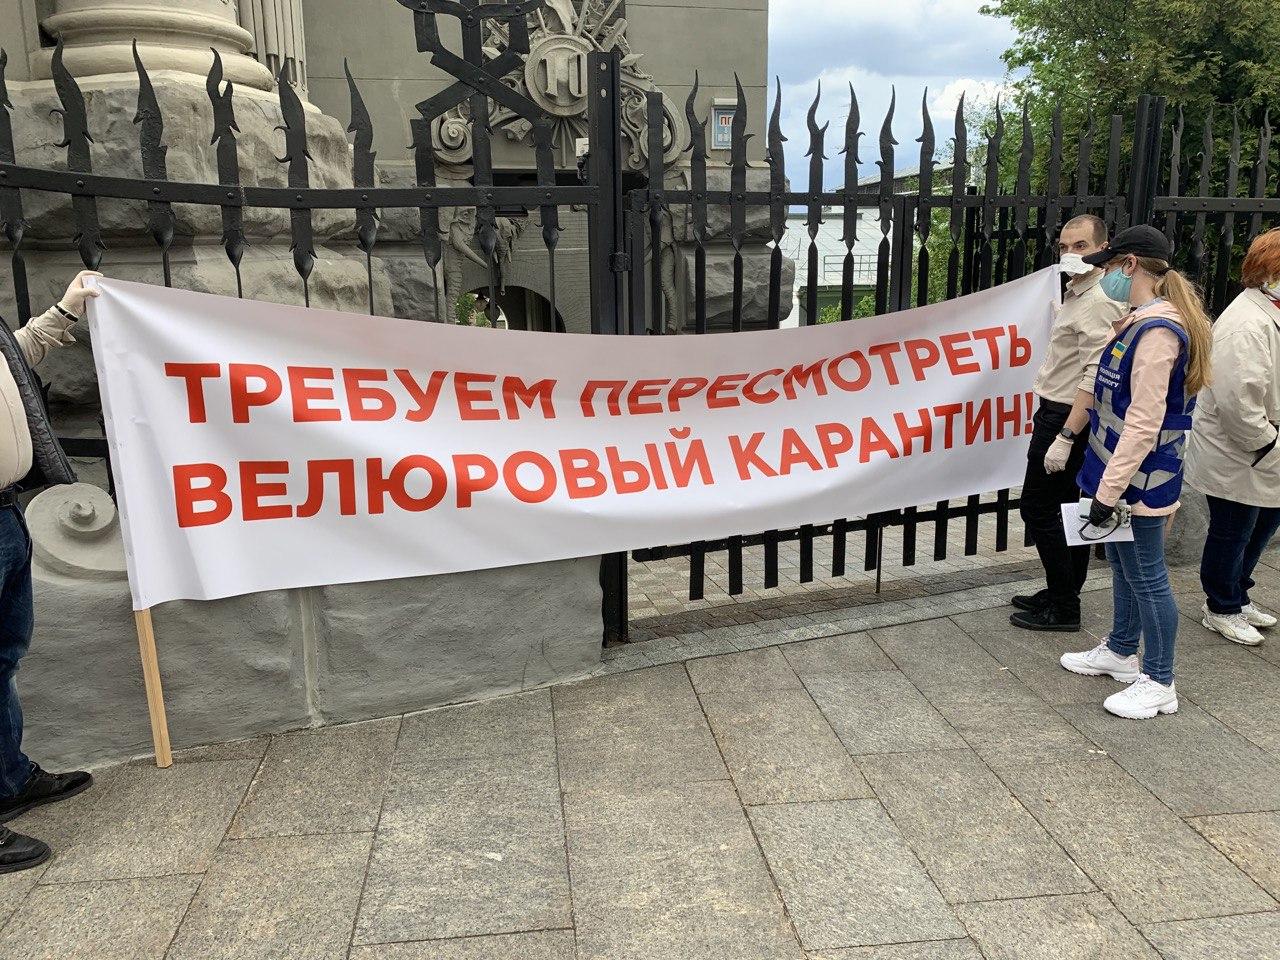 Лозунг протеста: "Требуем пересмотреть велюровый карантин"